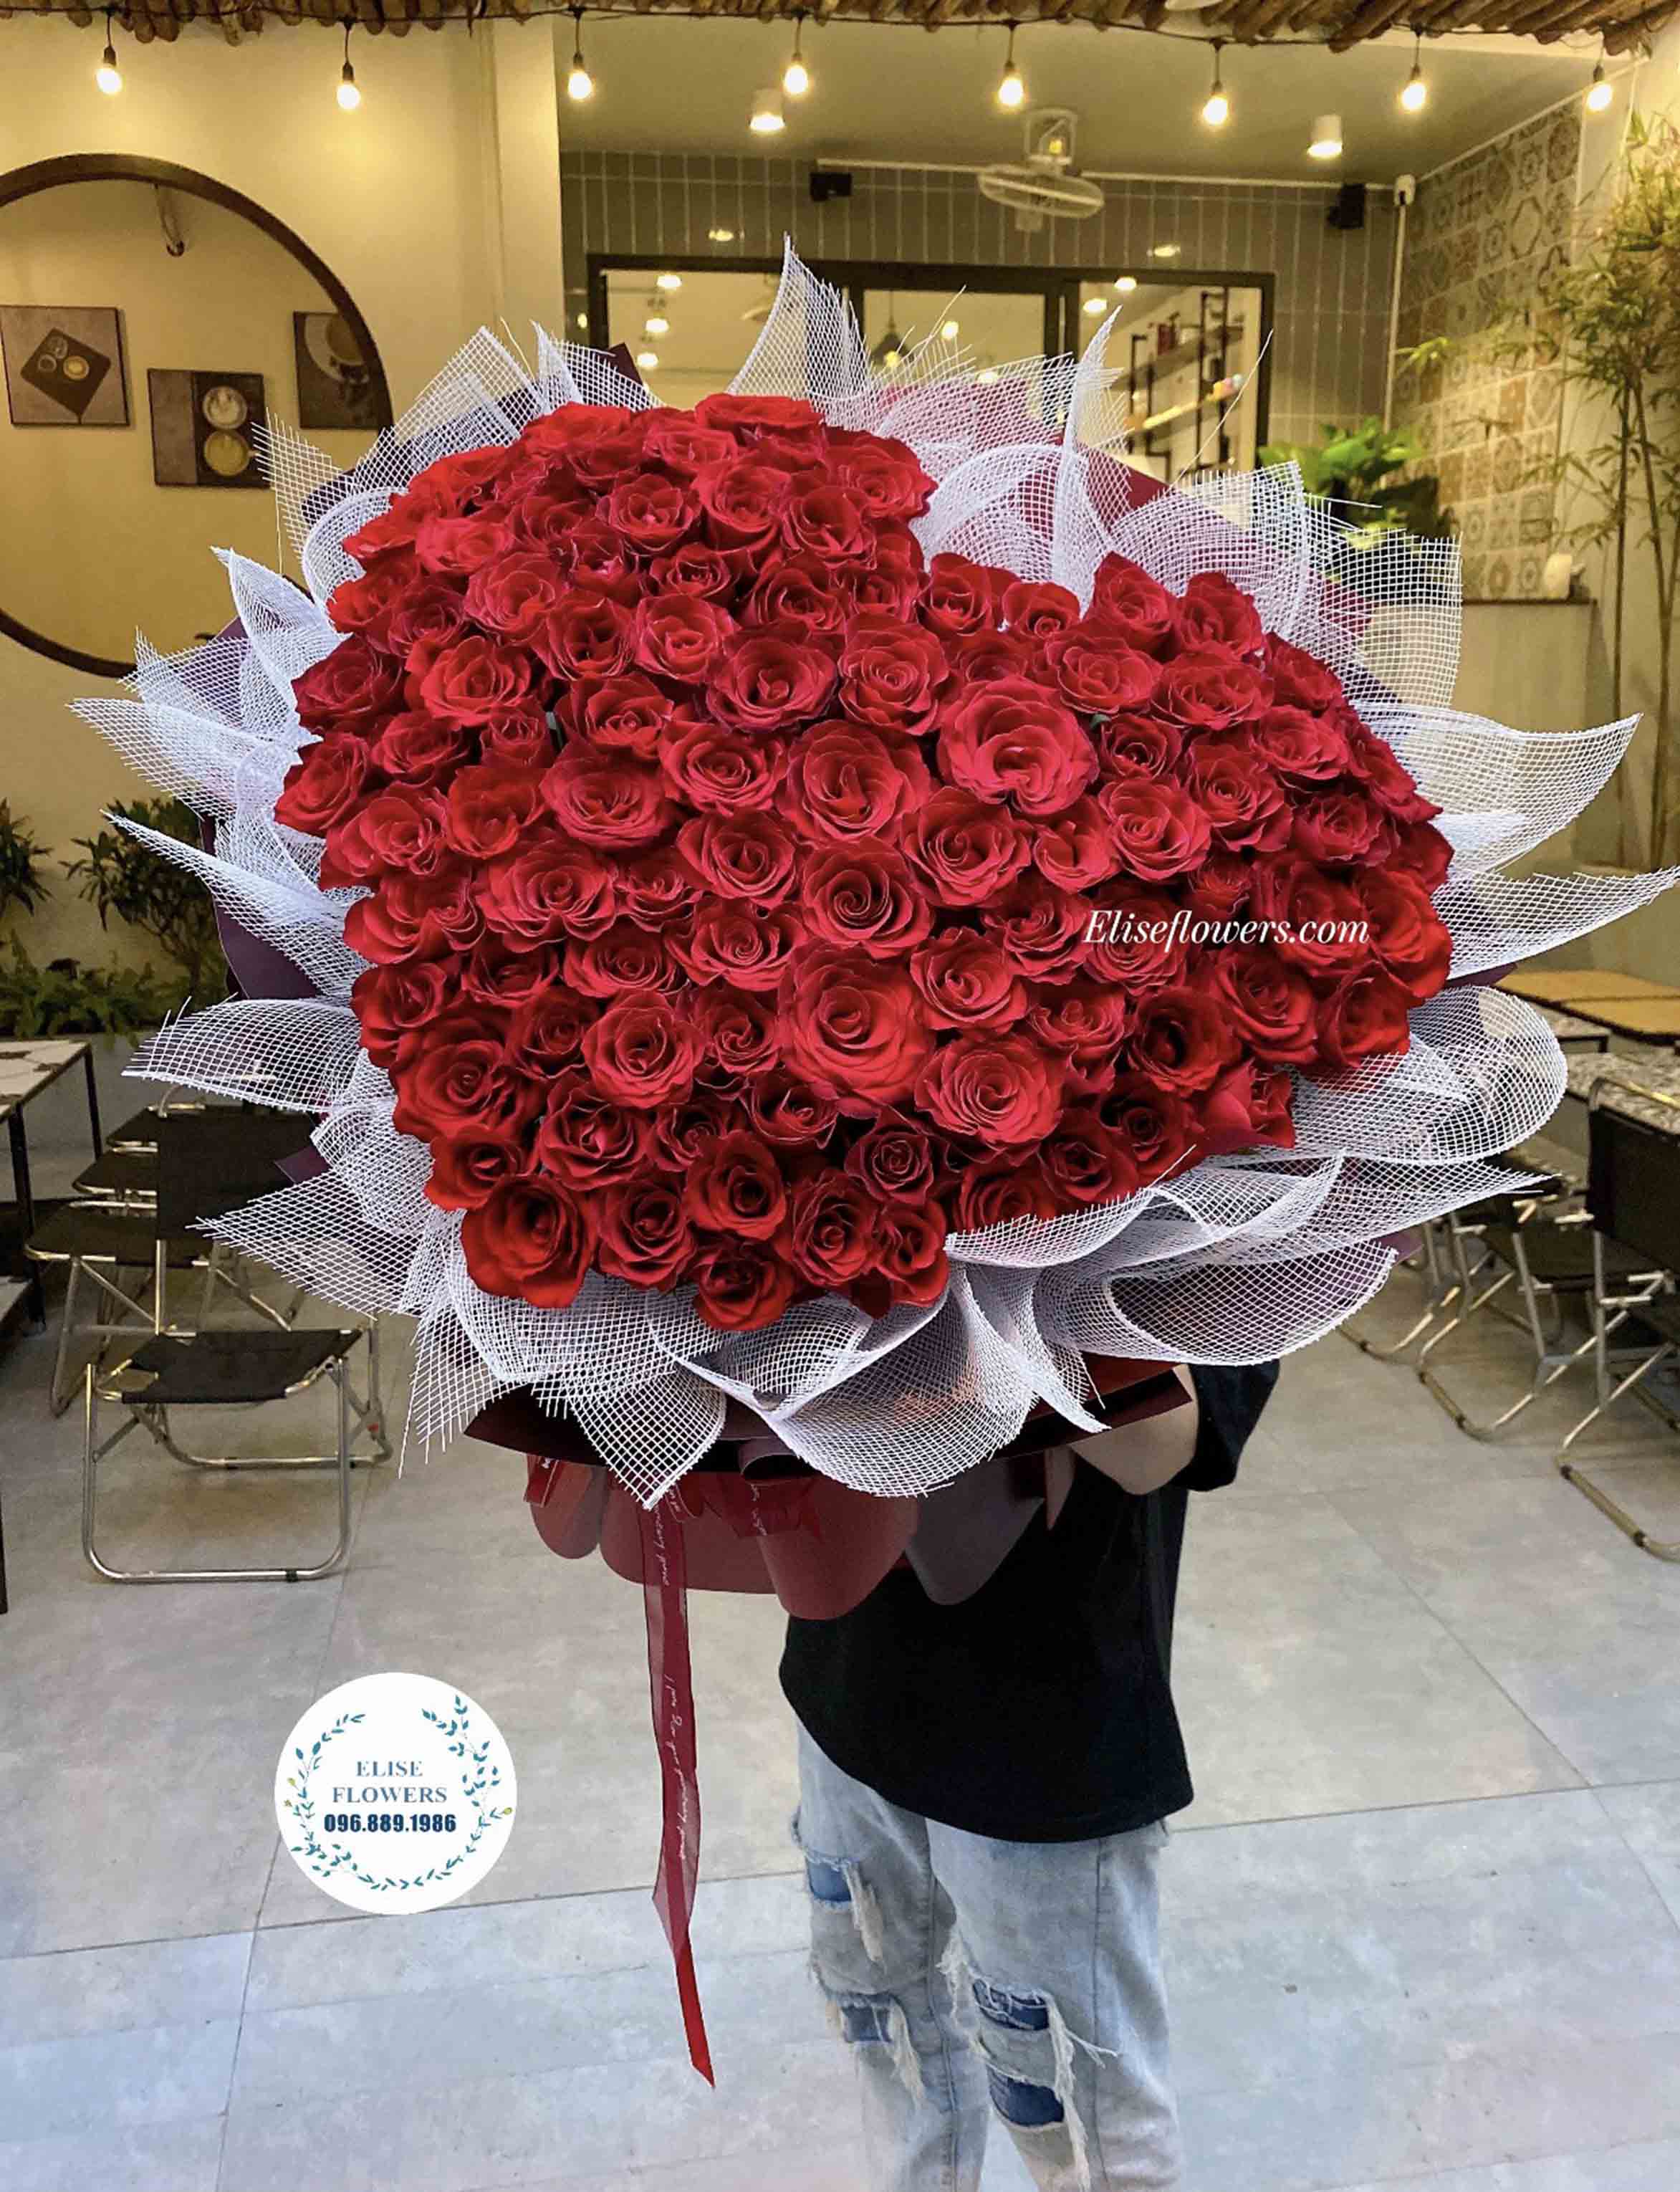 Bó hoa hồng đỏ đẹp: Hãy chiêm ngưỡng bức tranh đẹp như một tác phẩm nghệ thuật với bó hoa hồng đỏ đầy sức sống và sắc đẹp tuyệt vời. Những cánh hoa được sắp xếp tỉ mỉ, kết hợp cùng lá xanh bổng tạo nên một bó hoa độc đáo và tuyệt vời.